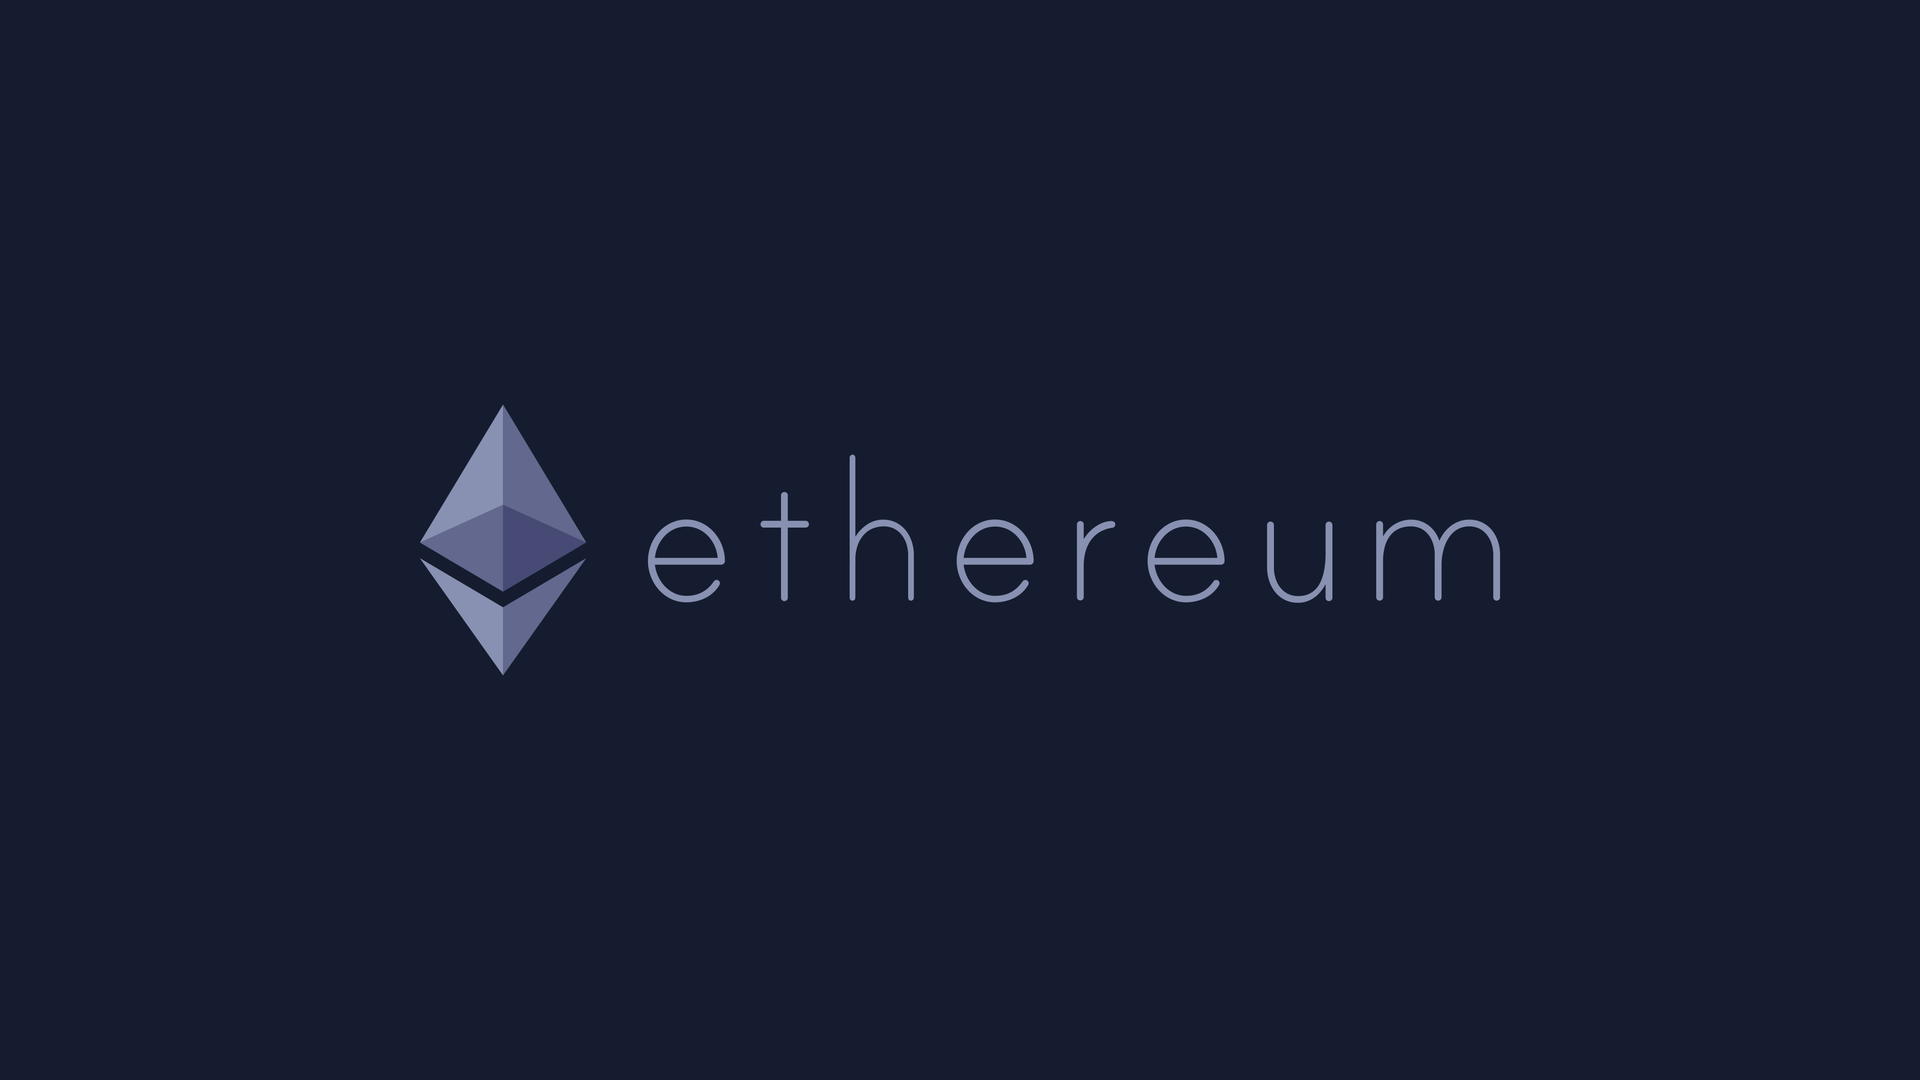 Логотип ETH в альбомному форматі (фіолетовий)